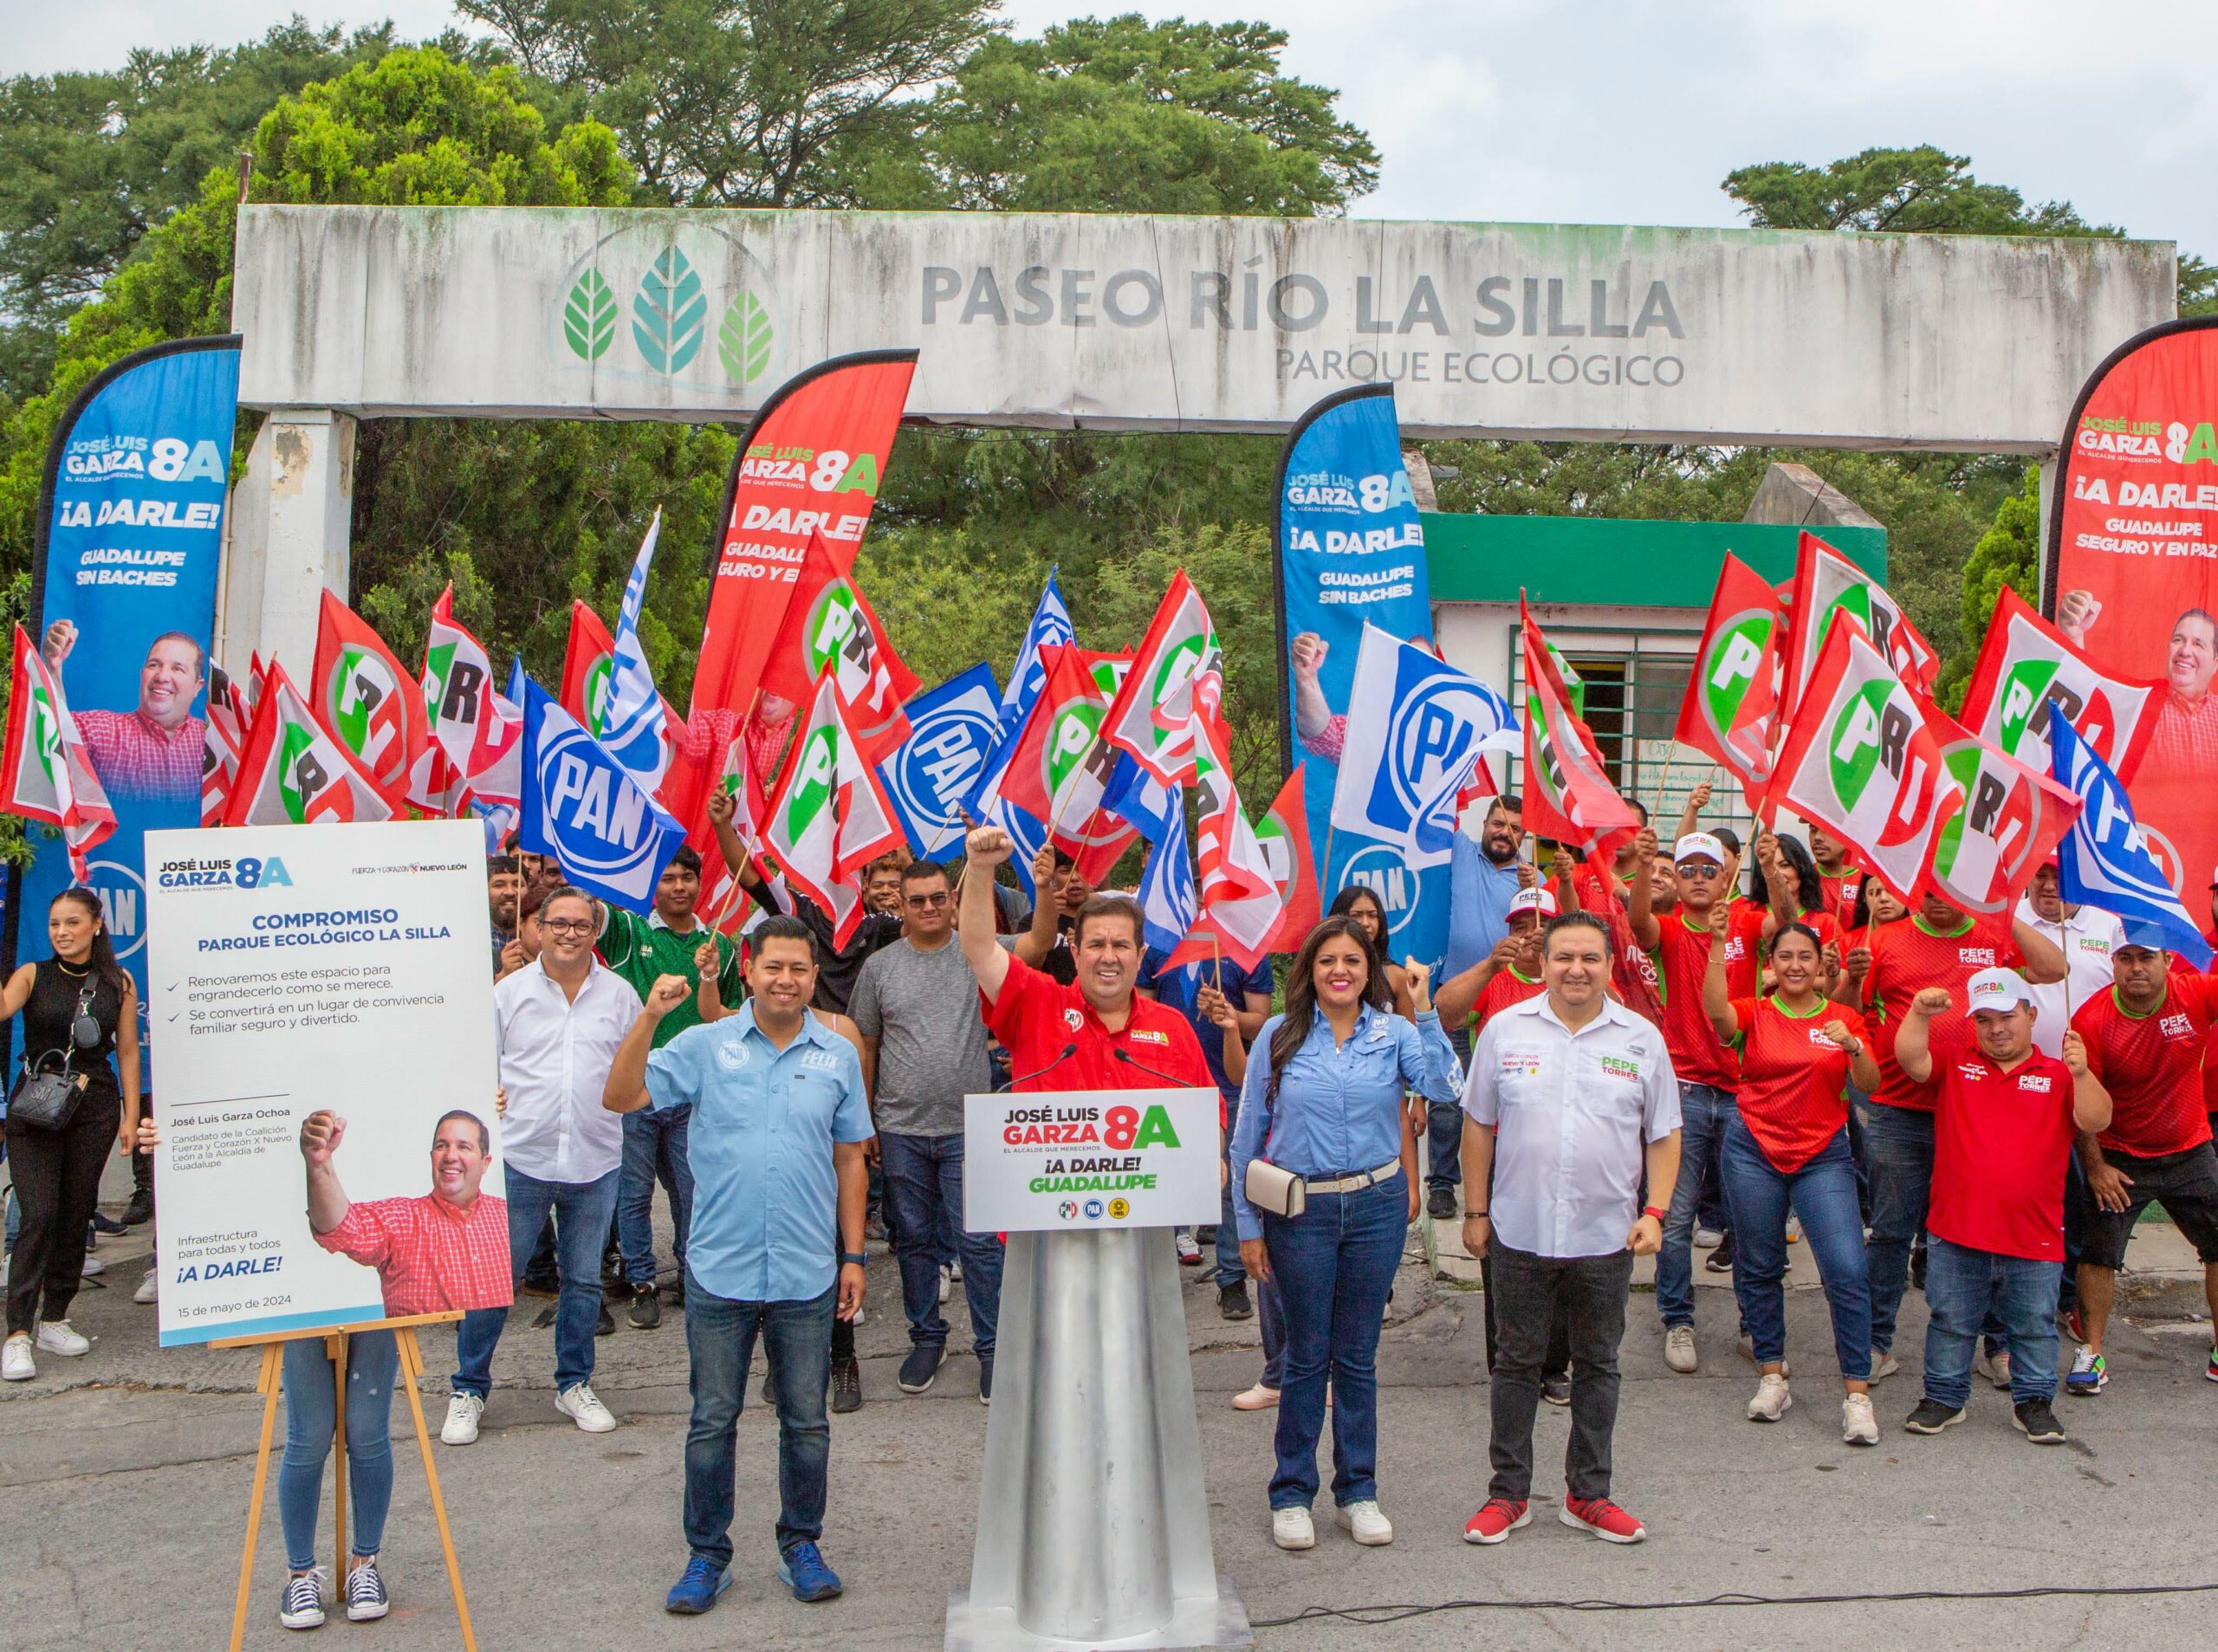 Firma José Luis Garza Ochoa compromiso para engrandecer parques emblemáticos de Guadalupe